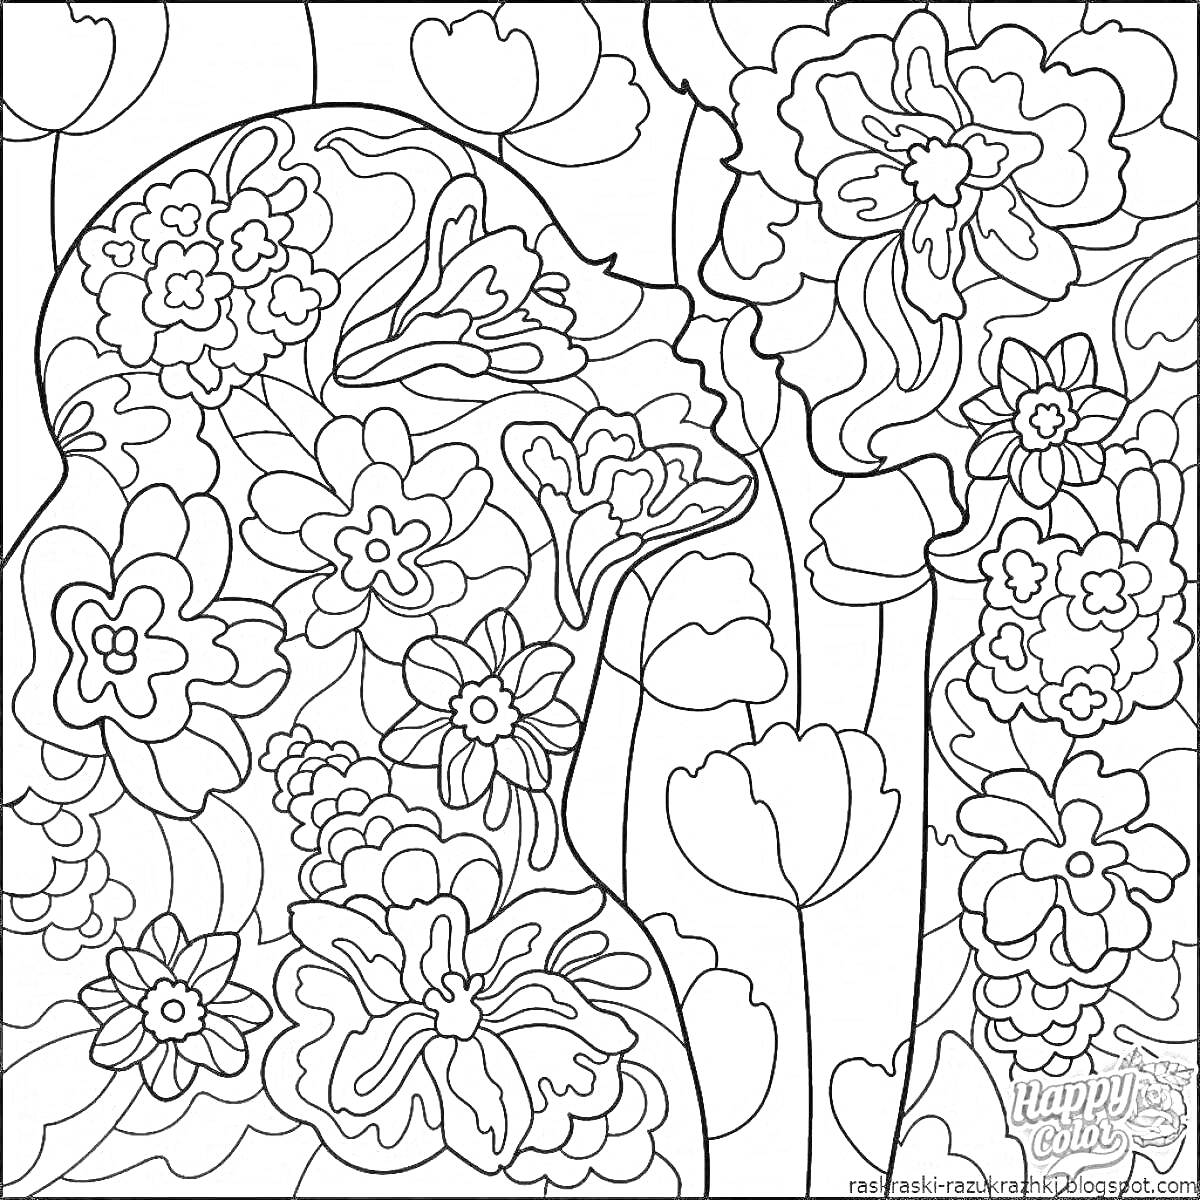 Раскраска Силуэт человека, окружённого цветами